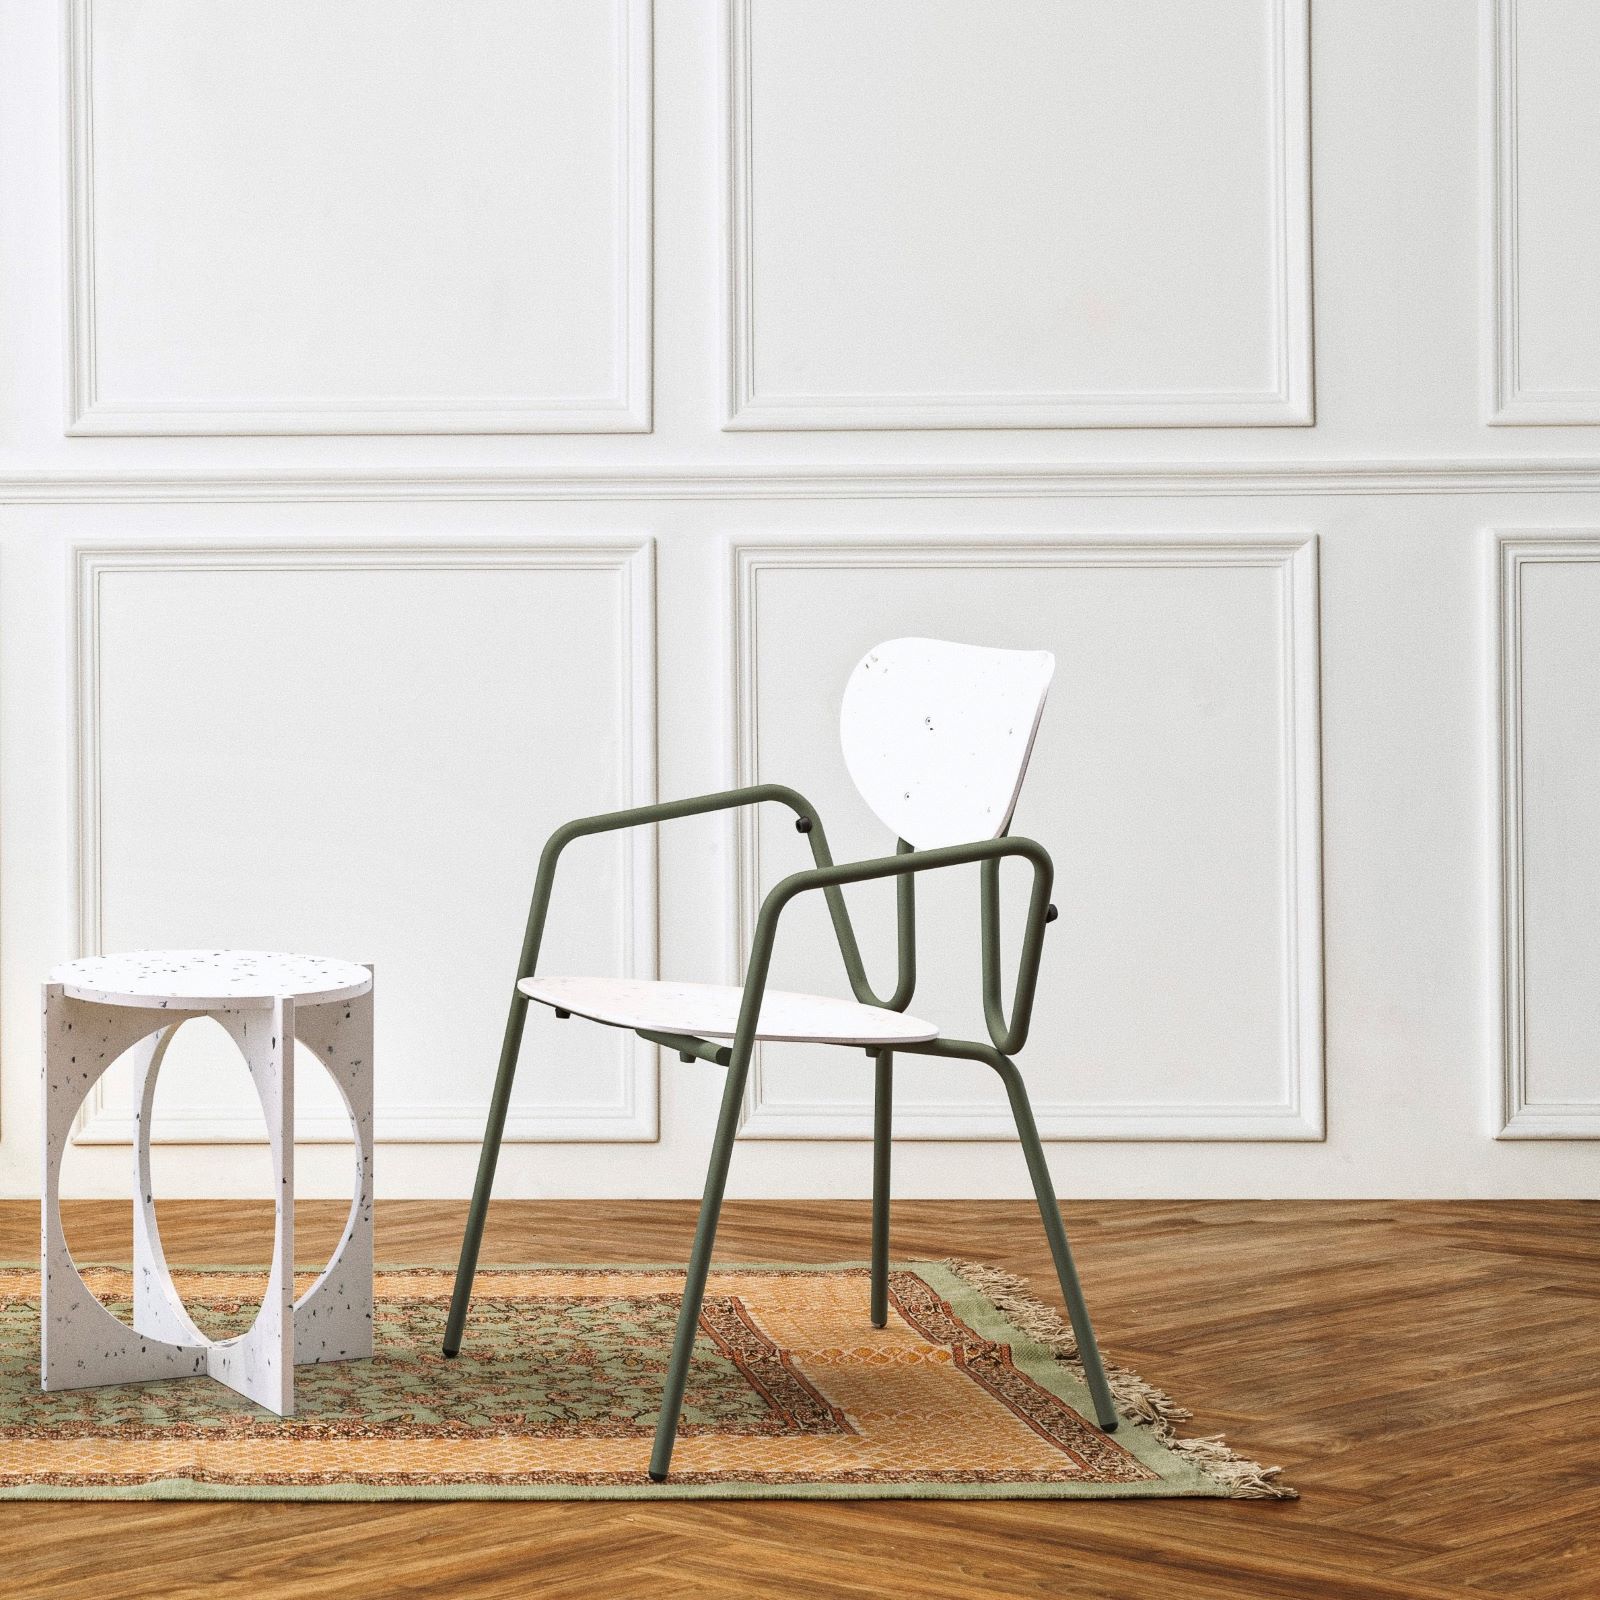 Productfoto van de stoel Kyrielle in een lege witte ruimte met een vloerkleed en kleine bijzettafeltje.